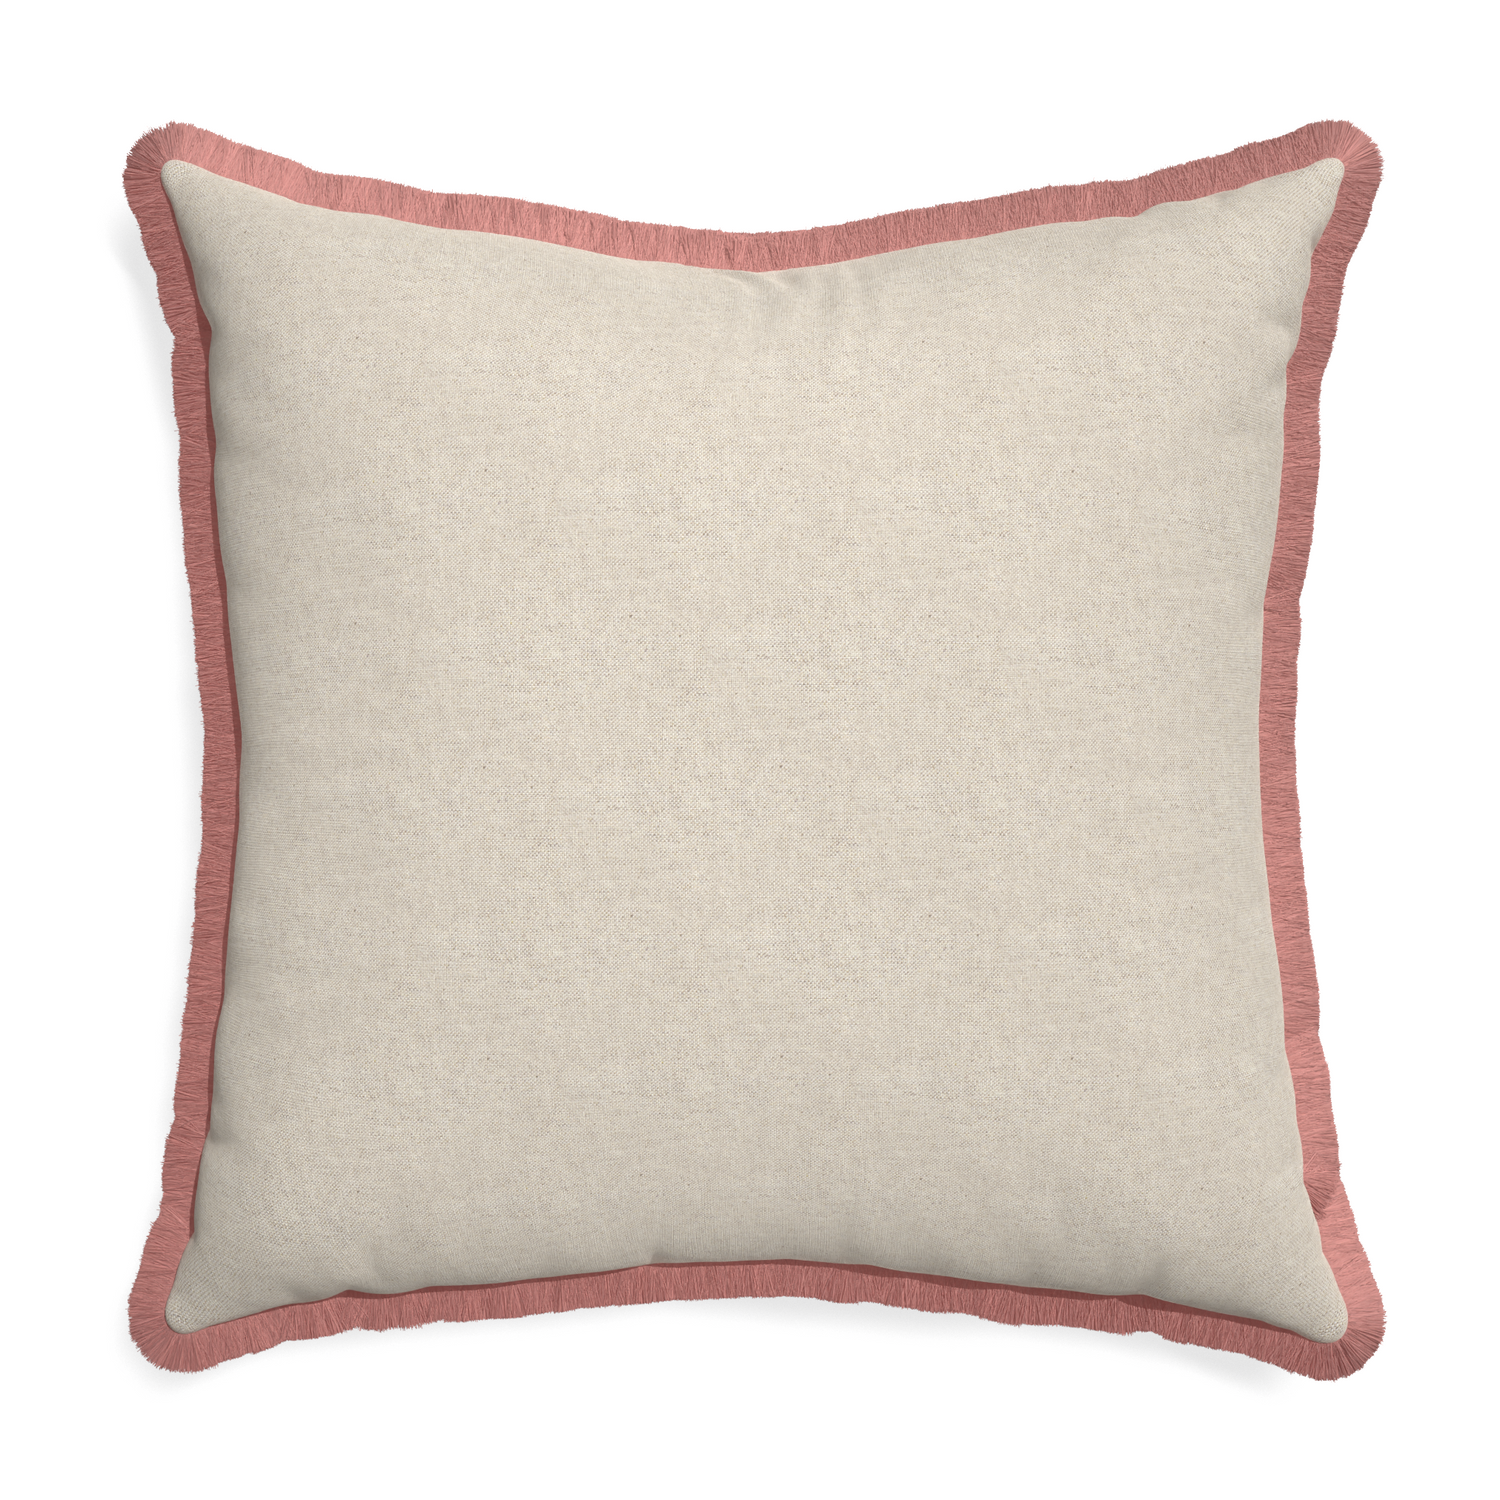 Euro-sham oat custom pillow with d fringe on white background